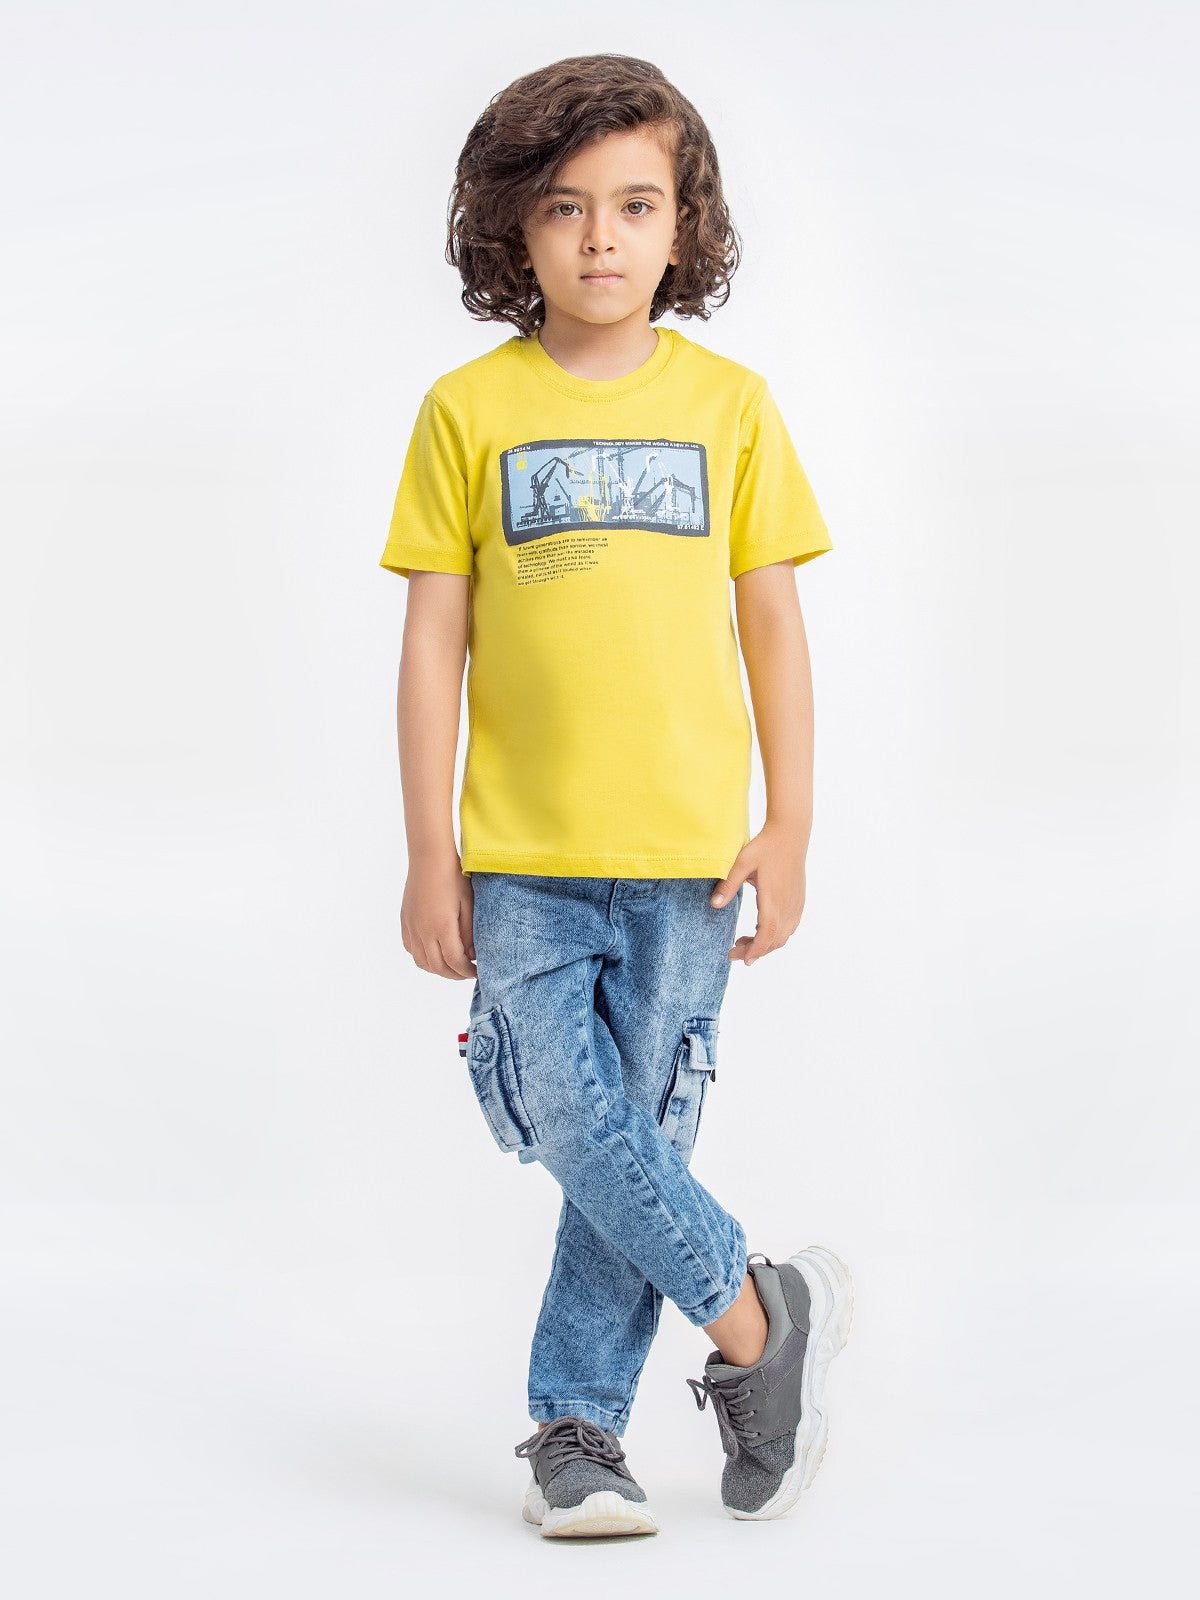 Boy's Lime Yellow T-Shirt - EBTTS23-025